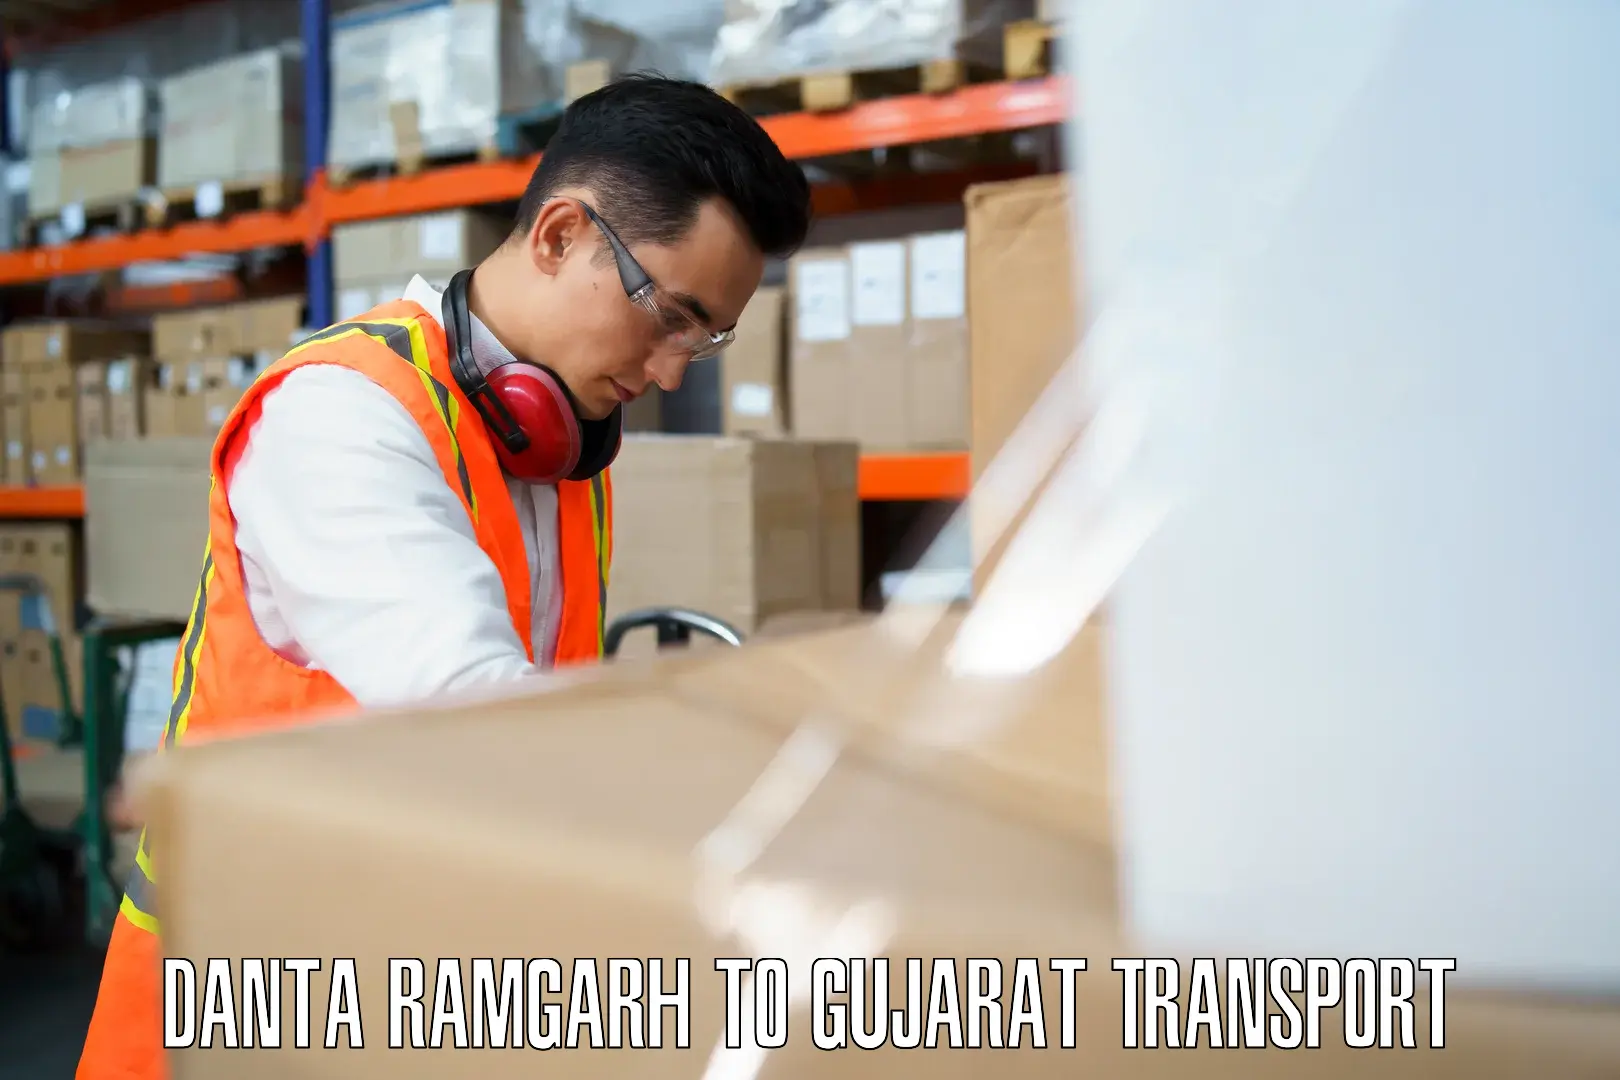 Parcel transport services Danta Ramgarh to Idar